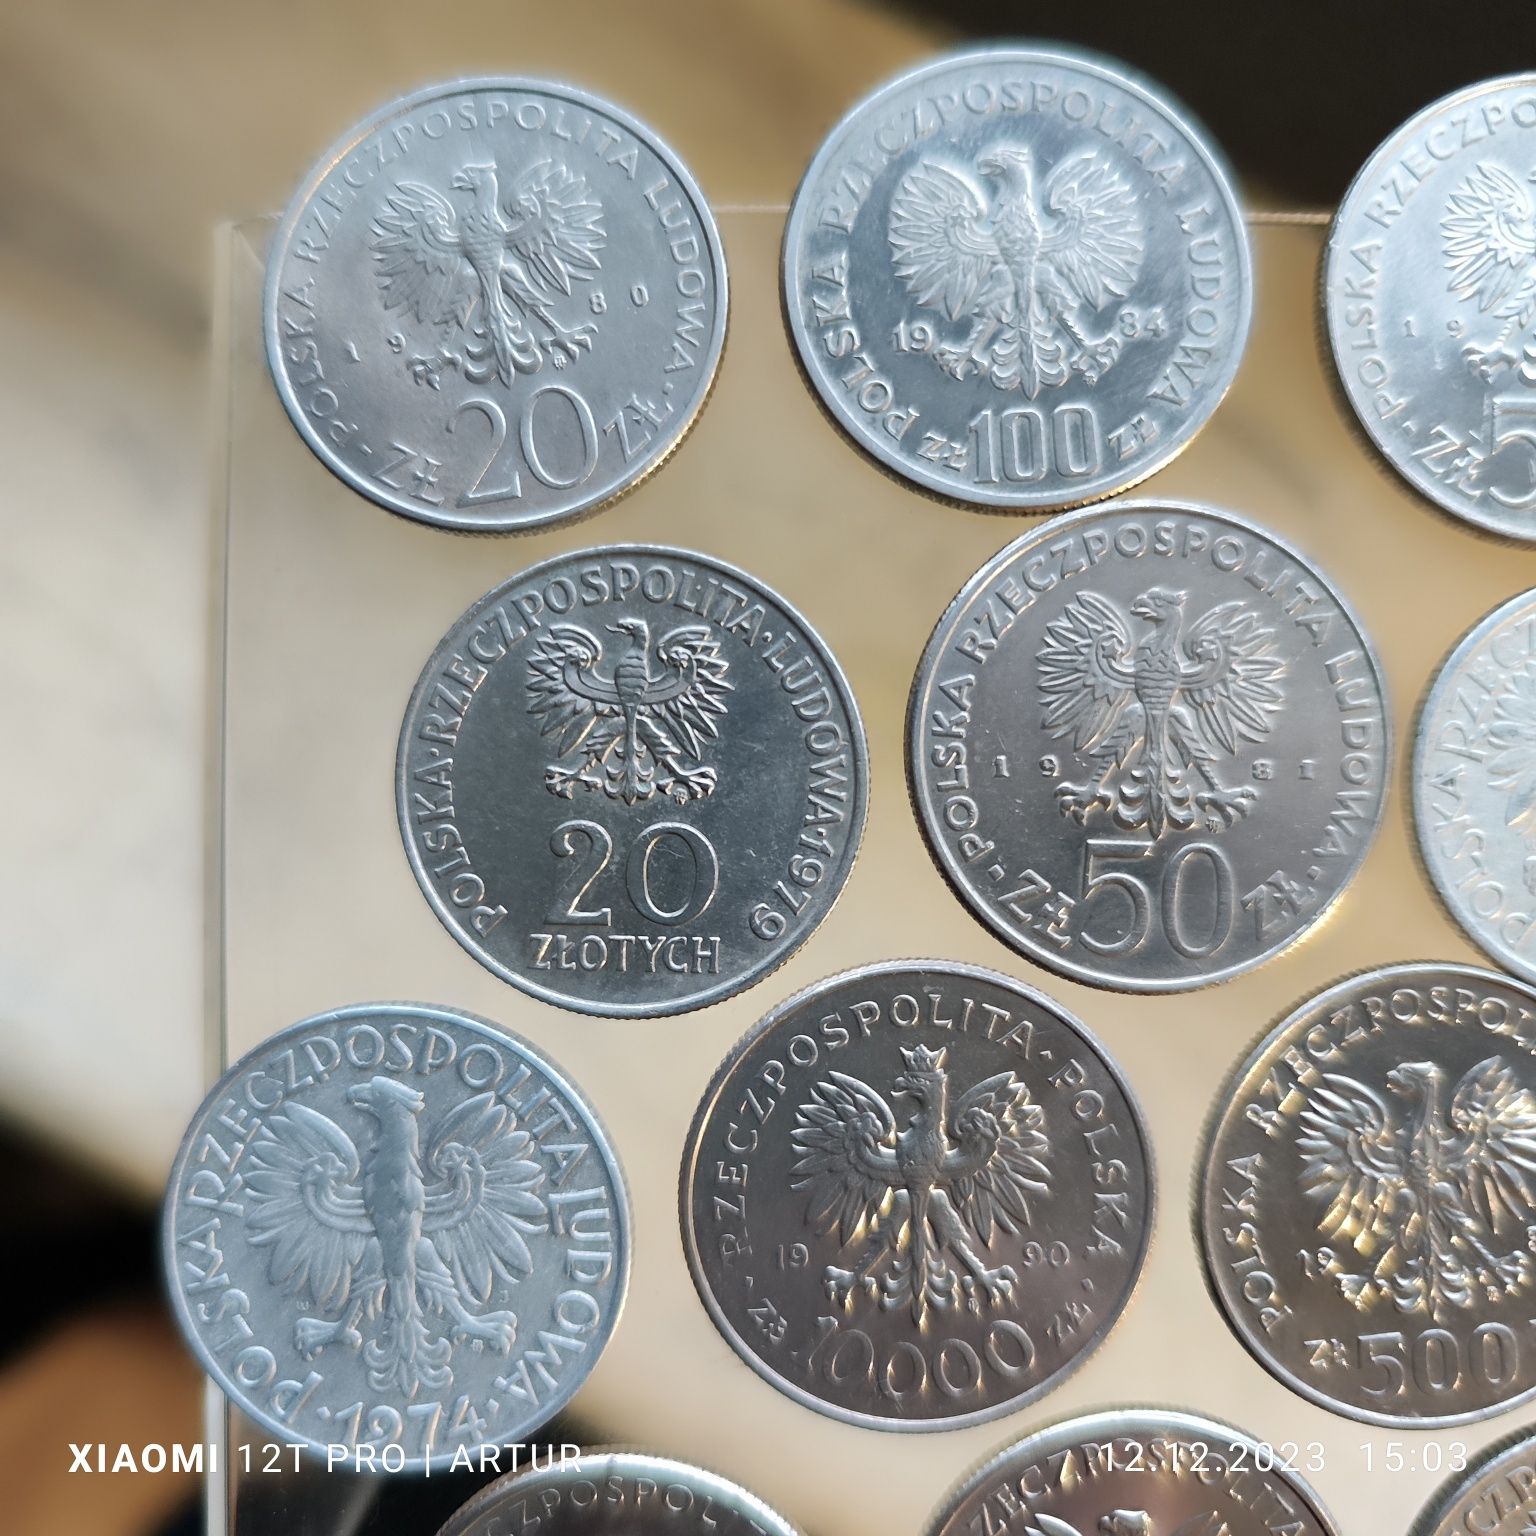 12 monet z epoki PRL zestaw 12